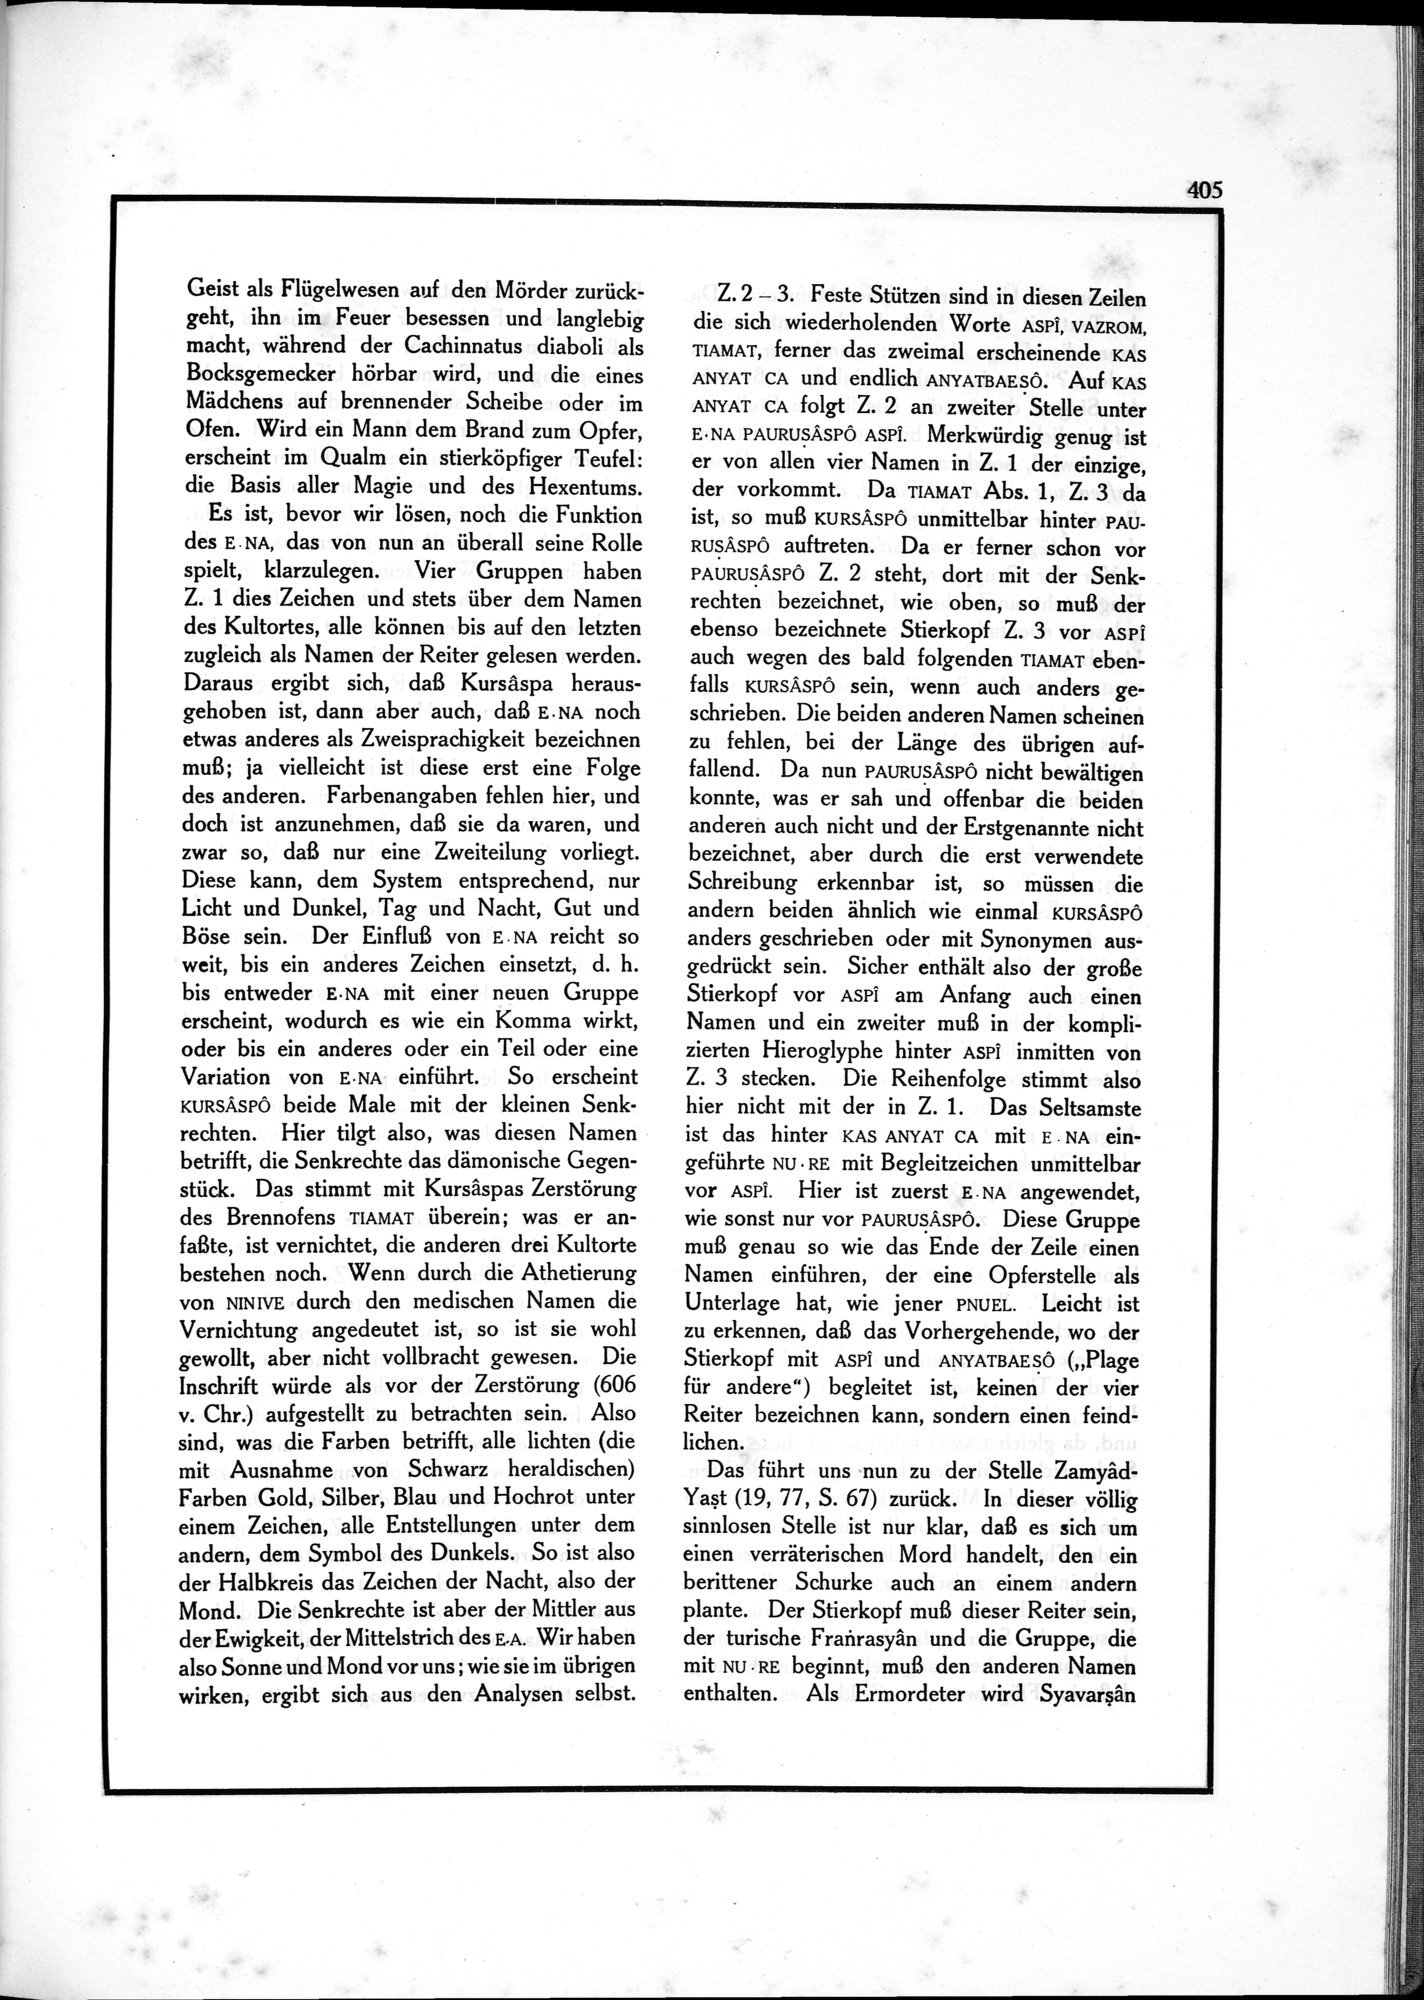 Die Teufel des Avesta und Ihre Beziehungen zur Ikonographie des Buddhismus Zentral-Asiens : vol.1 / Page 409 (Grayscale High Resolution Image)